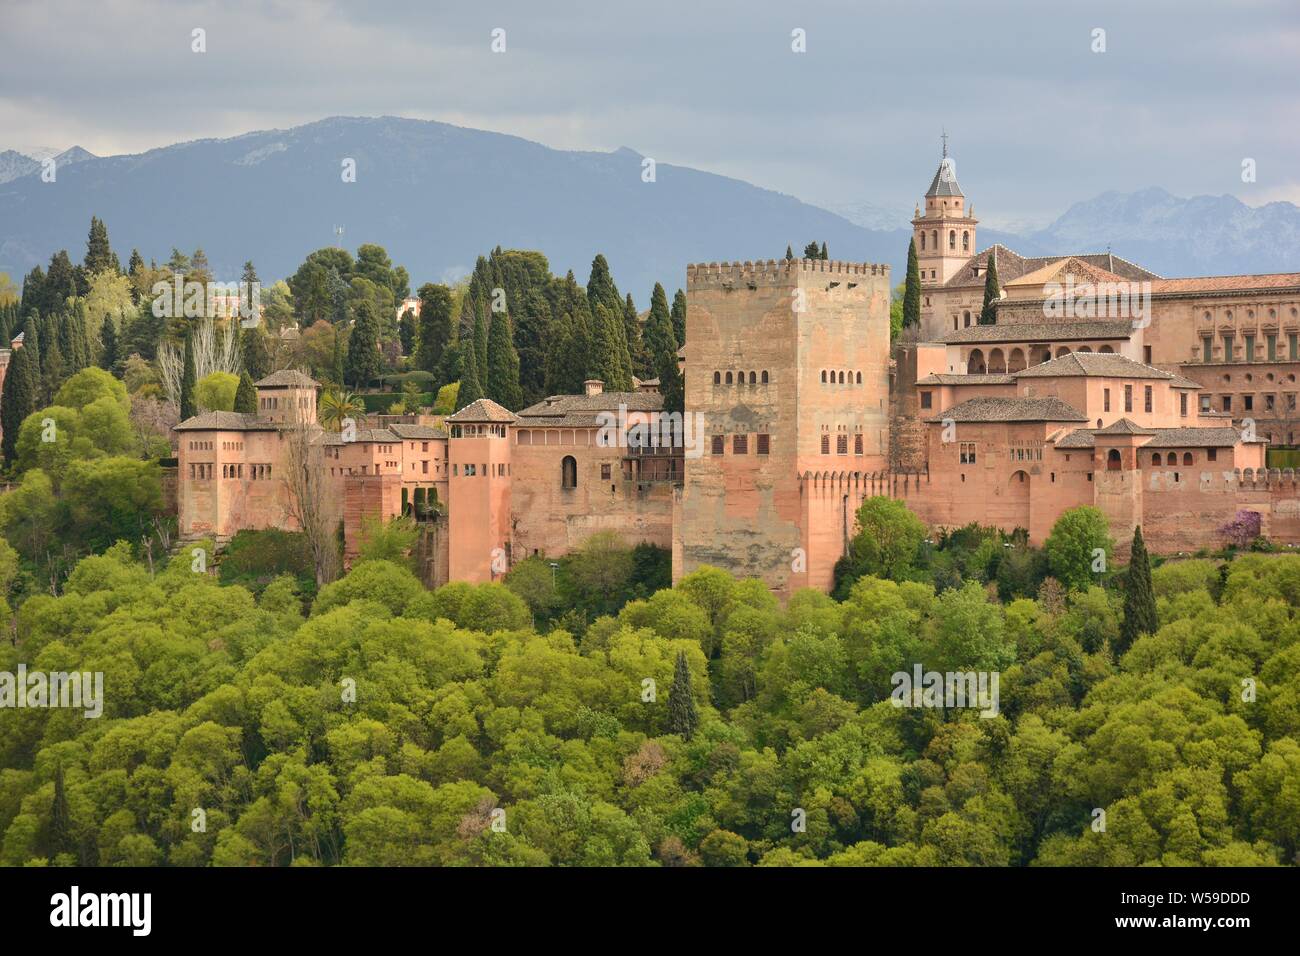 La Alhambra de Granada vista desde el mirador de san Nicolas Stock Photo